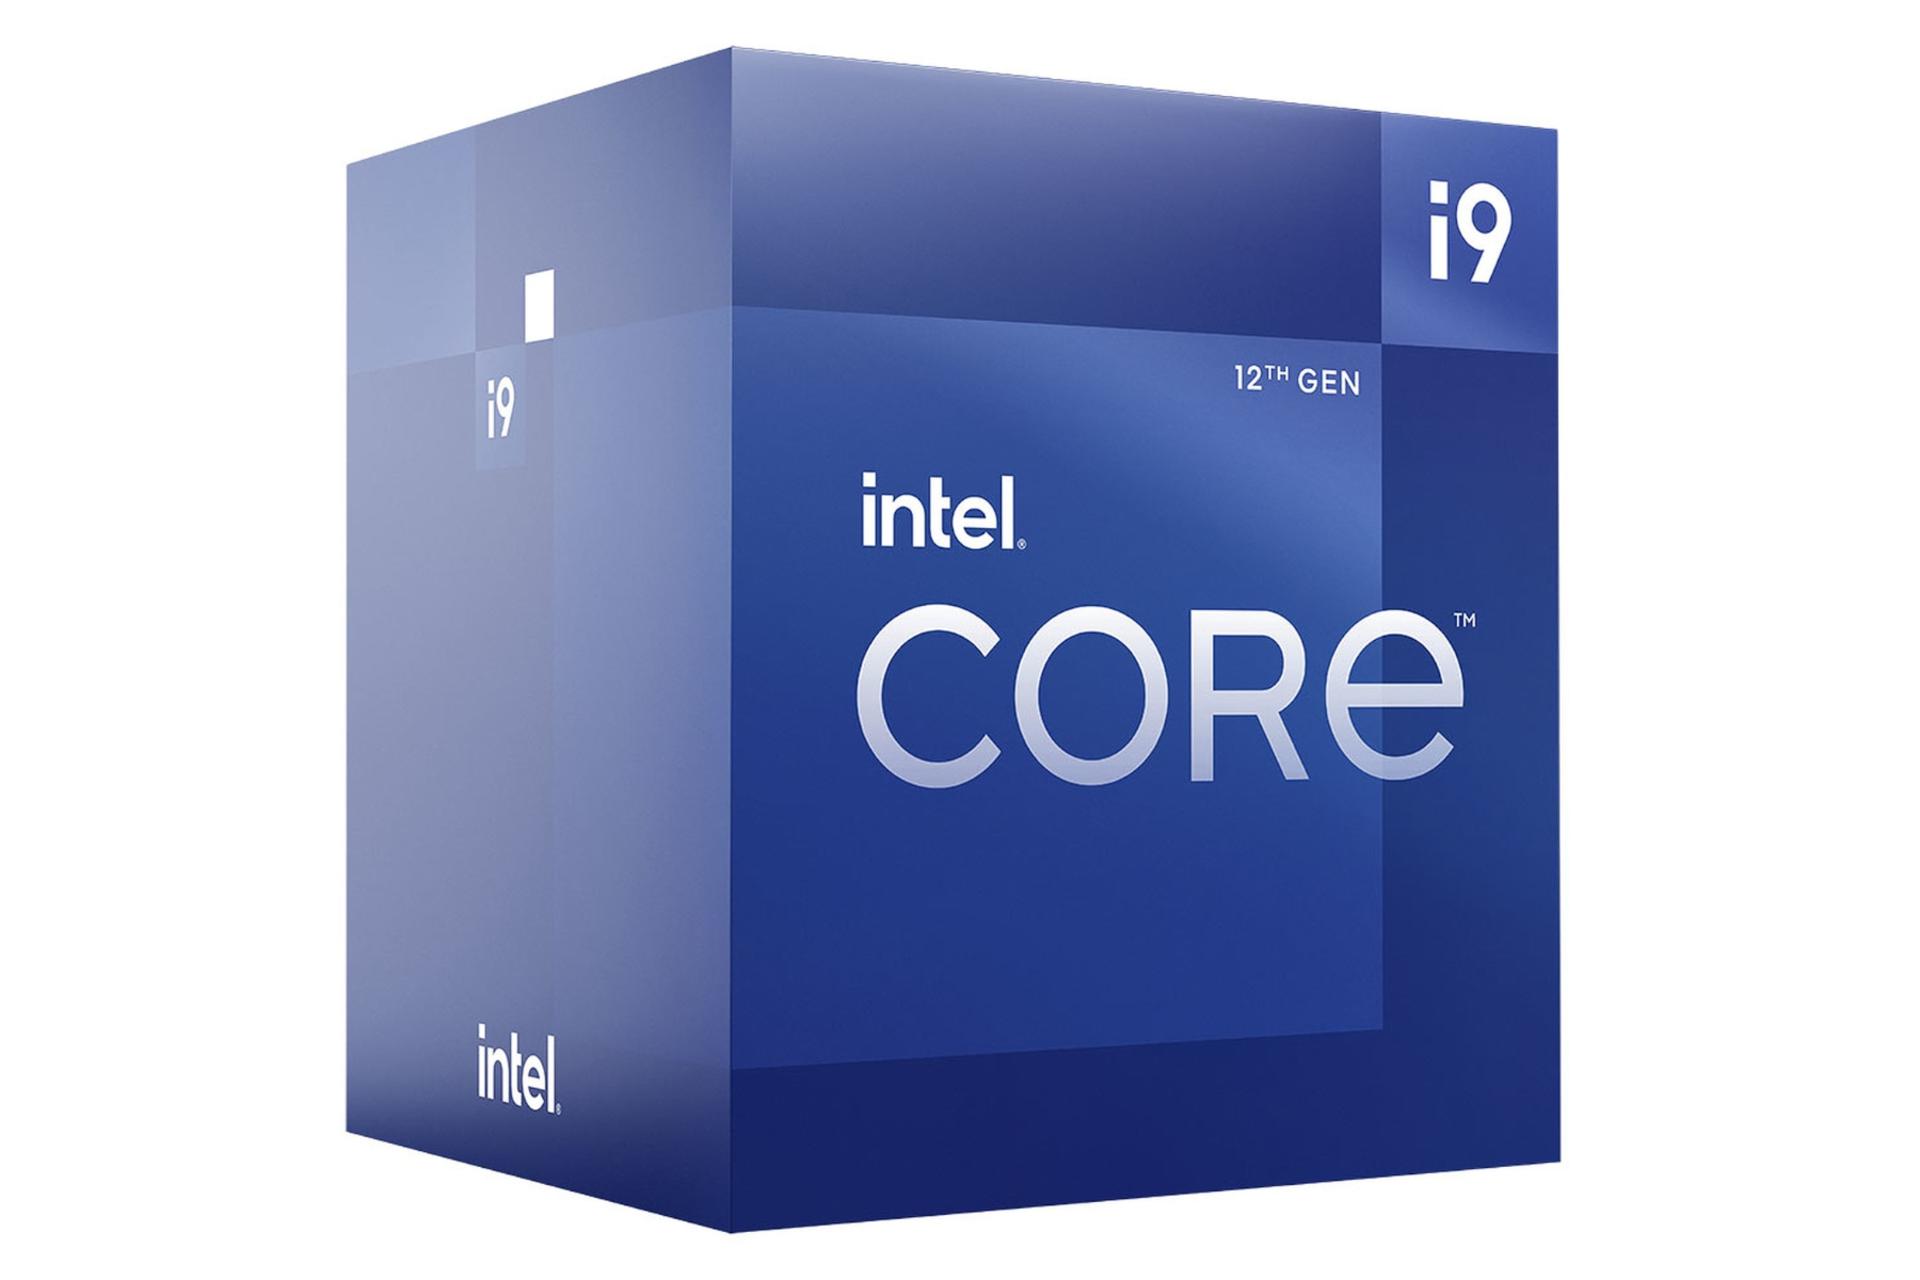 نمای چپ جعبه پردازنده اینتل Core i9 نسل دوازدهم / Intel Core i9 12th Gen